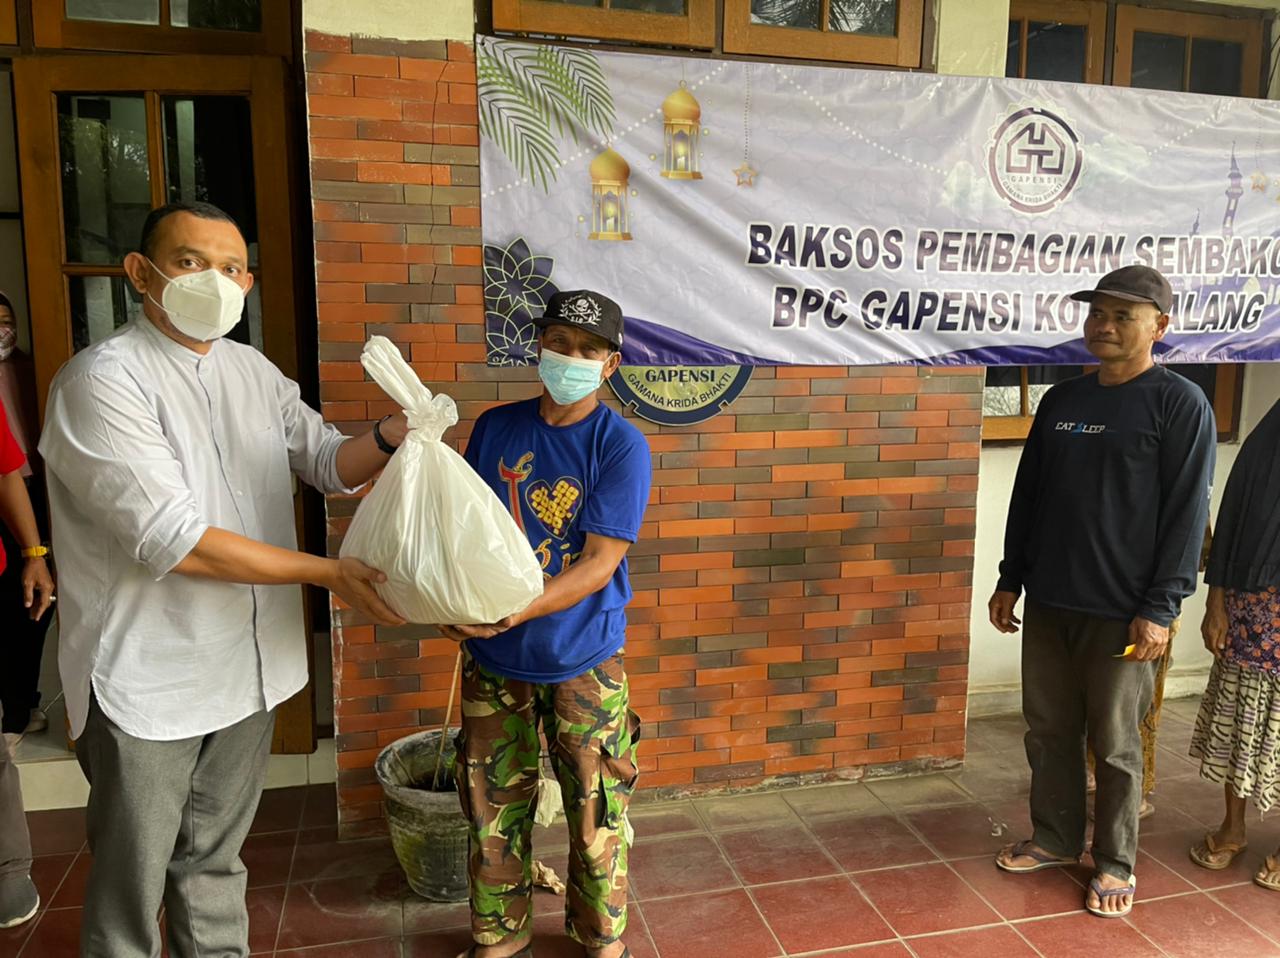 Lanjutkan Tradisi, BPC Gapensi Kota Malang Bagi Sembako ke Masyarakat